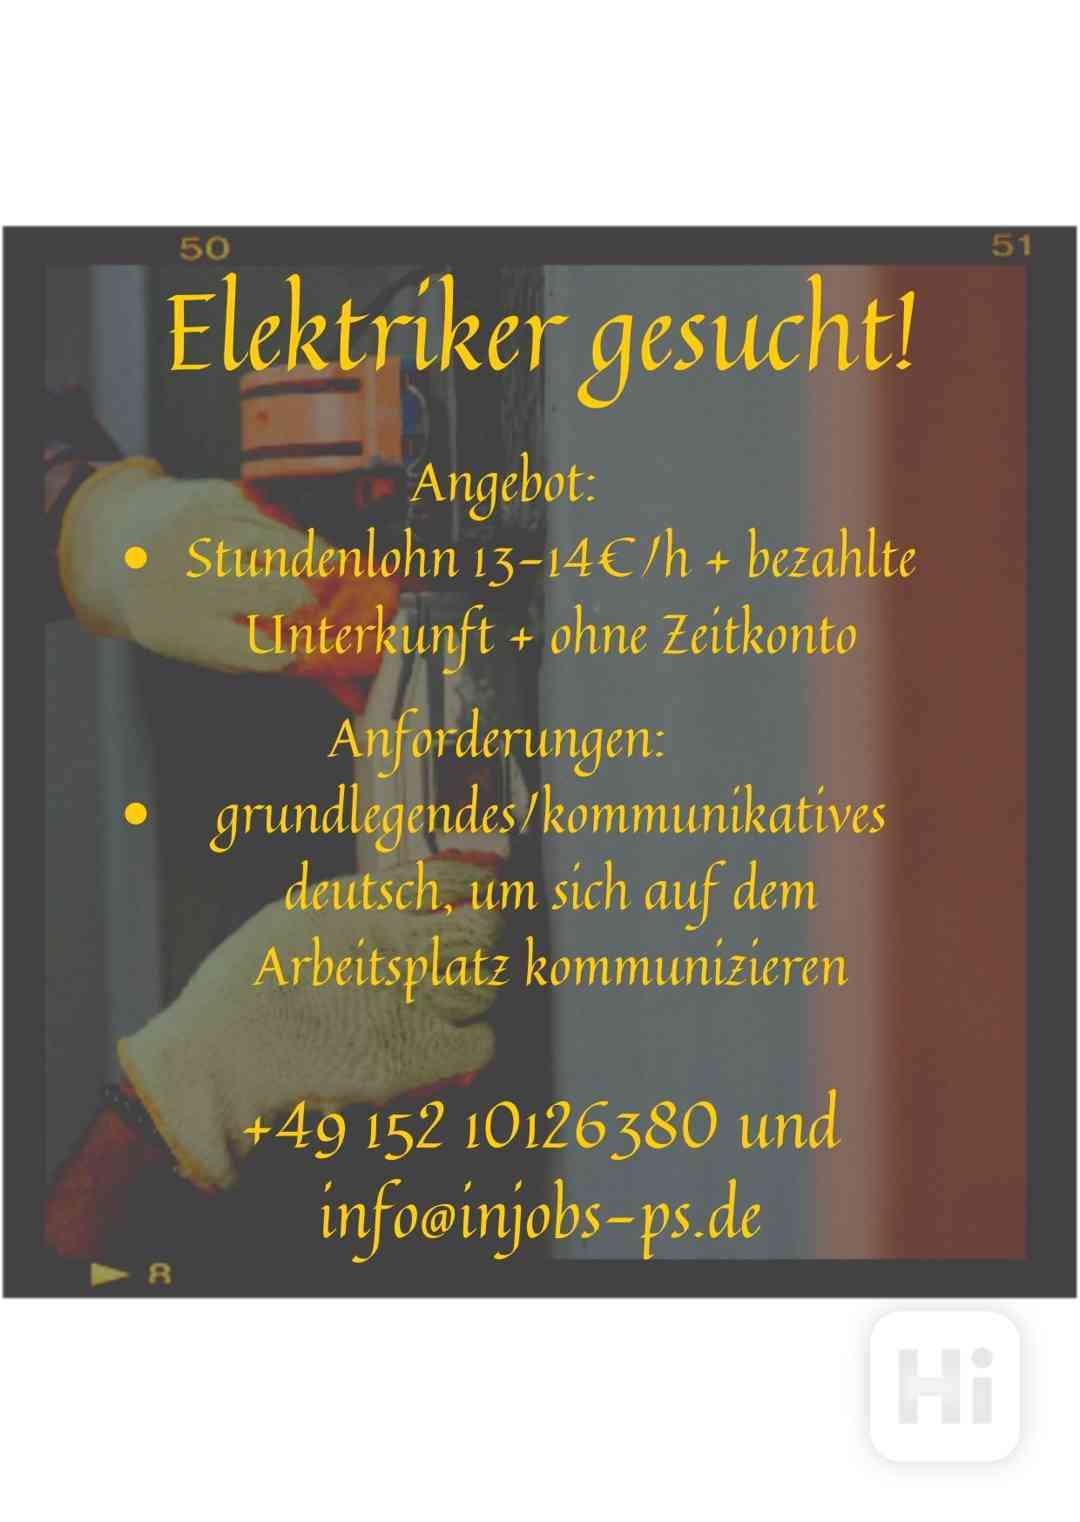 Hledá se elektromontér! / Elektriker gesucht! Deutschland - foto 1